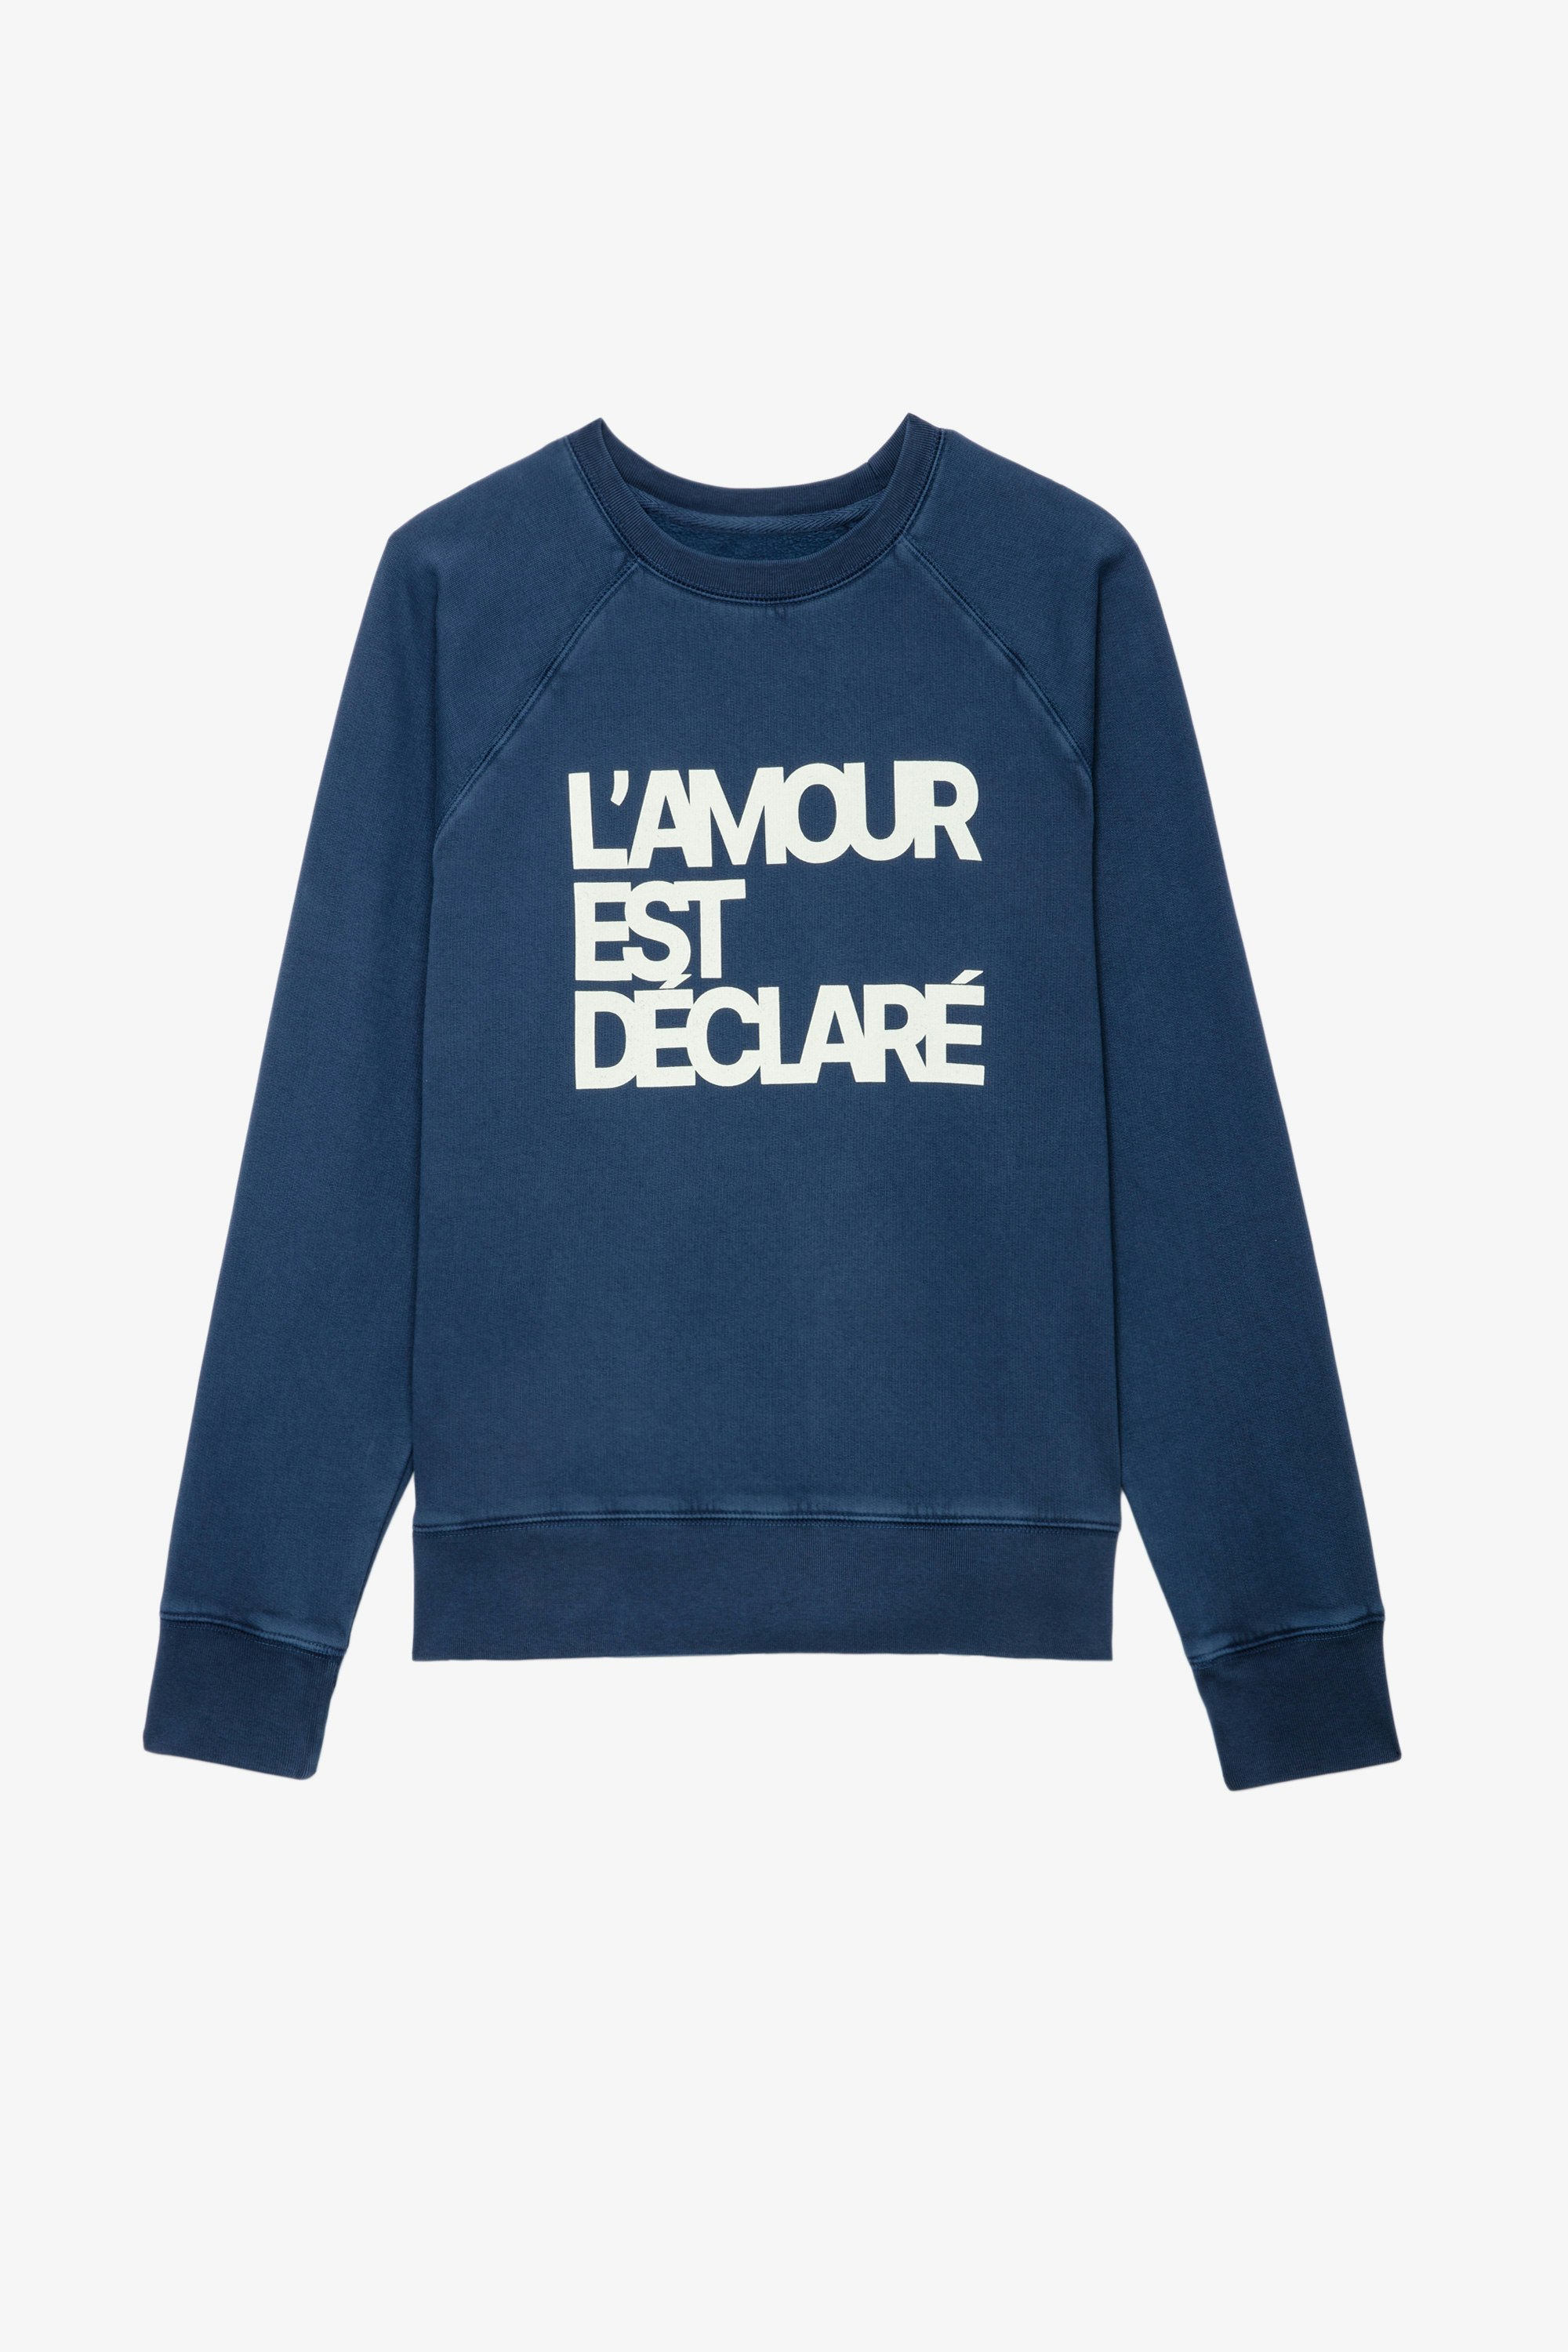 Upper L'Amour Est Déclaré スウェット Women’s blue cotton sweatshirt with “L'amour est déclaré” appliqué